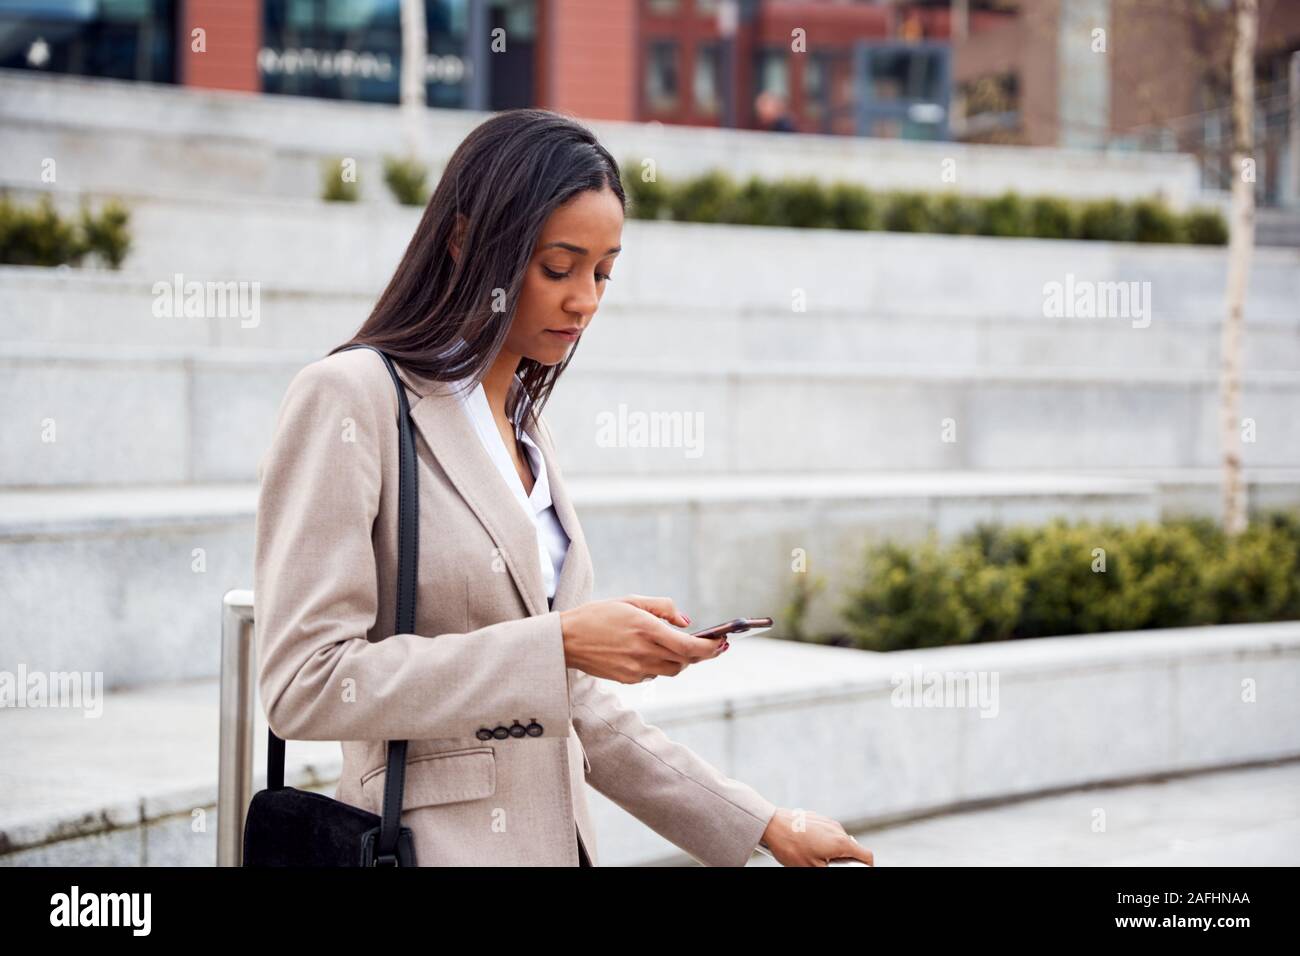 Businesswoman pour se rendre à son travail de la consultation des messages sur téléphone mobile à l'extérieur Immeuble de bureaux modernes Banque D'Images